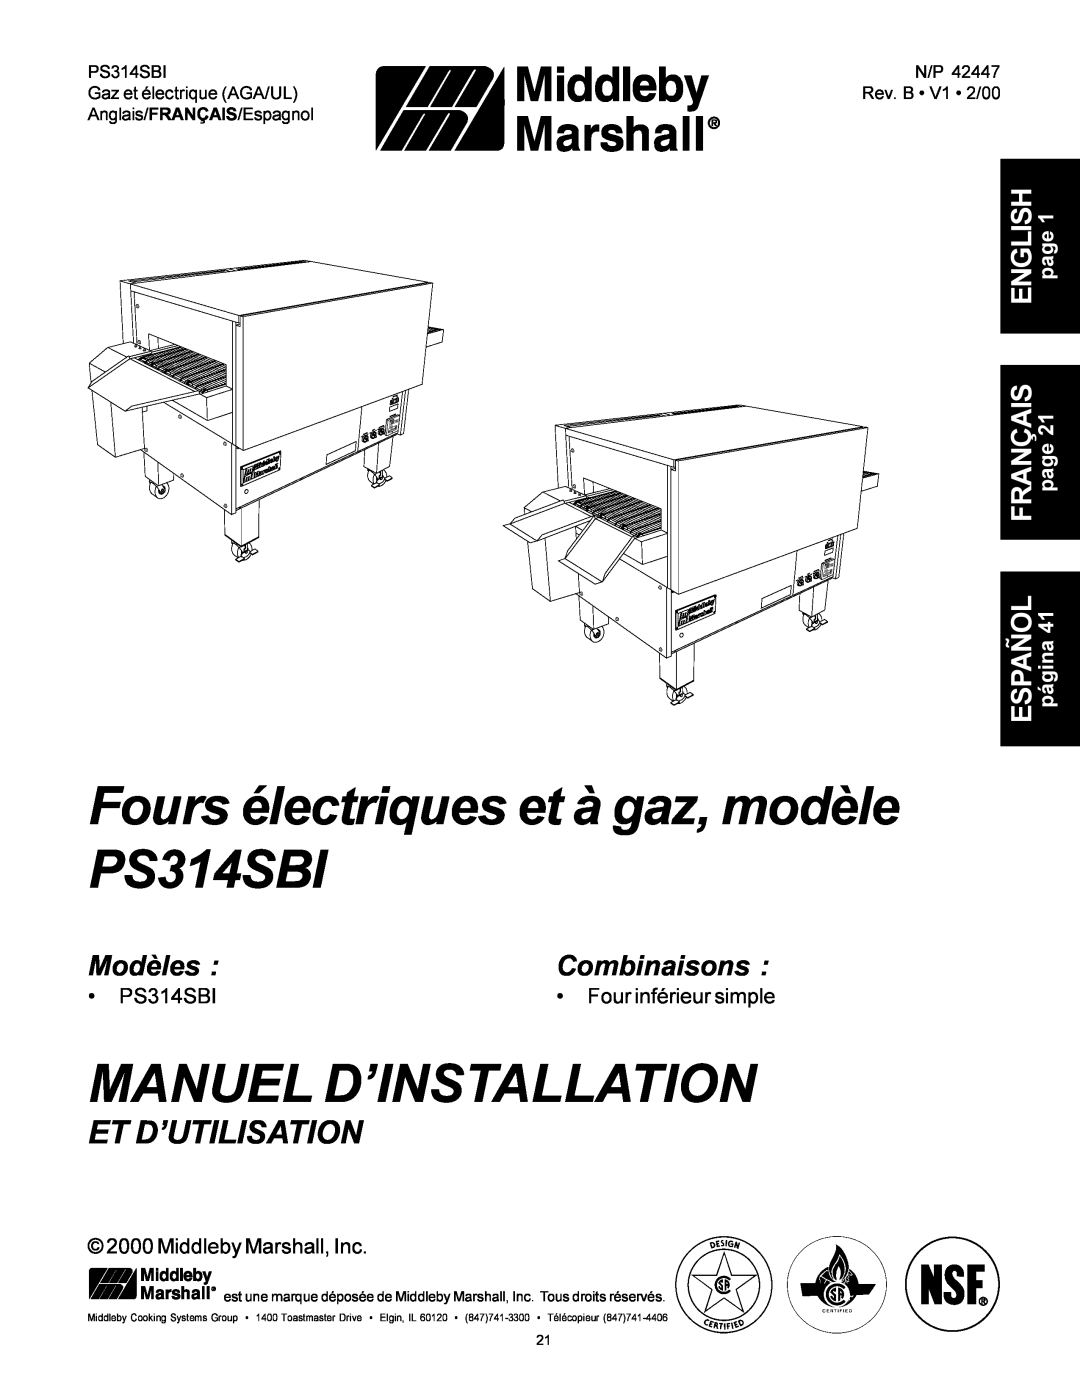 Middleby Marshall Fours électriques et à gaz, modèle PS314SBI, Manuel D’Installation, Et D’Utilisation, Modèles 